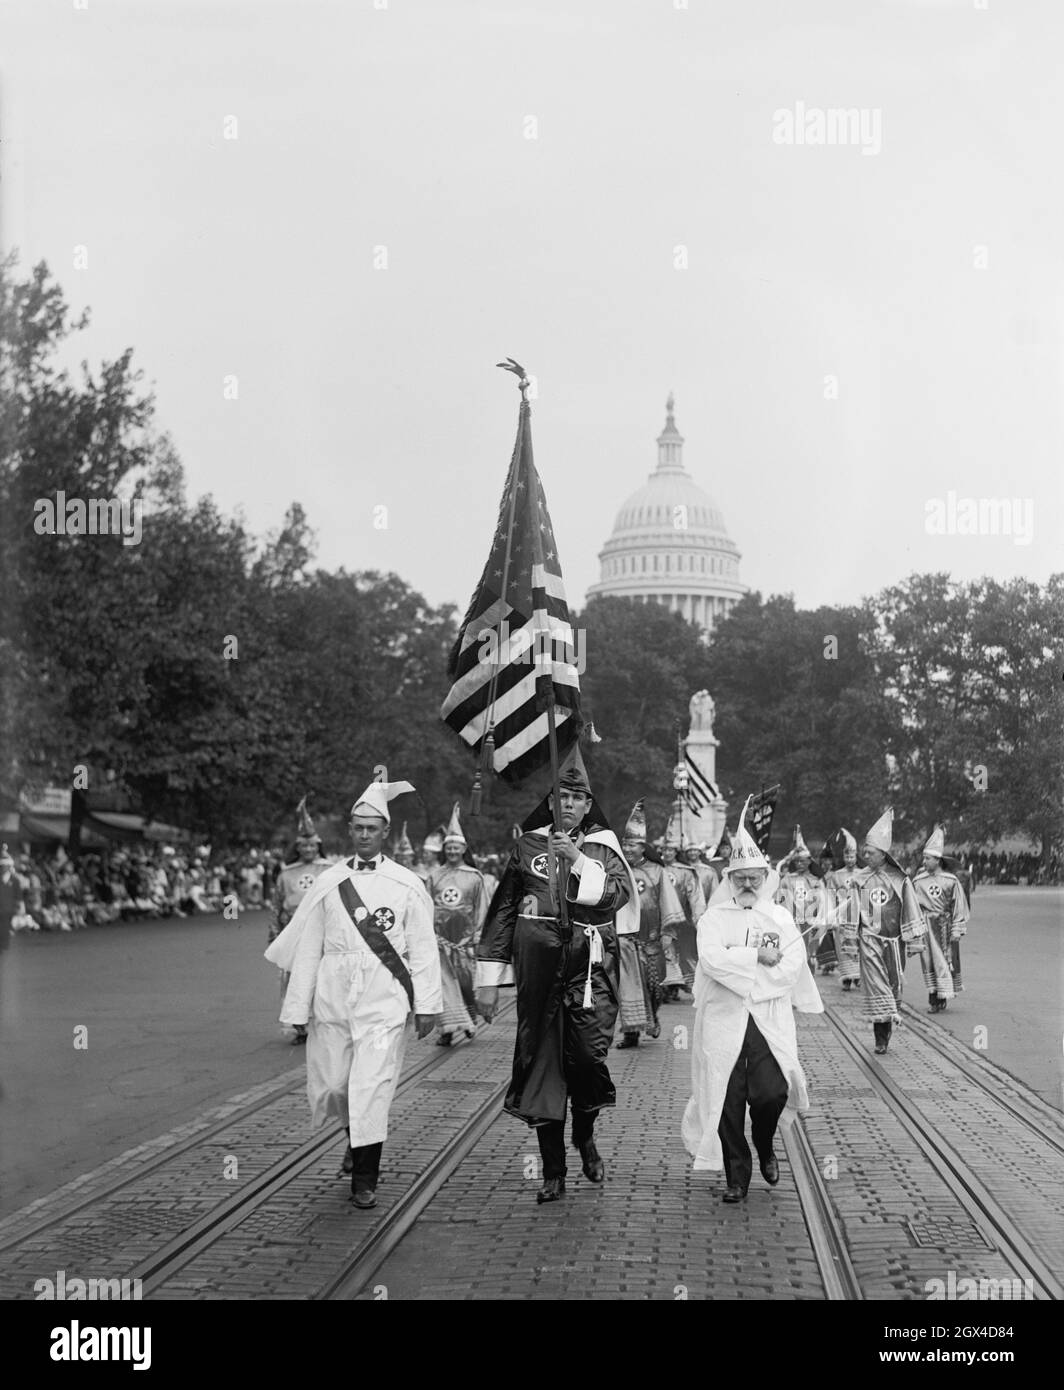 Foto vintage fechada el 13th 1926 de septiembre mostrando a los miembros de Ku Klux Klan vestidos con batas que paraban por la Avenida Pennsylvania en Washington, D.C., con la bandera de estrellas y rayas y la cúpula del Capitolio en el fondo Foto de stock